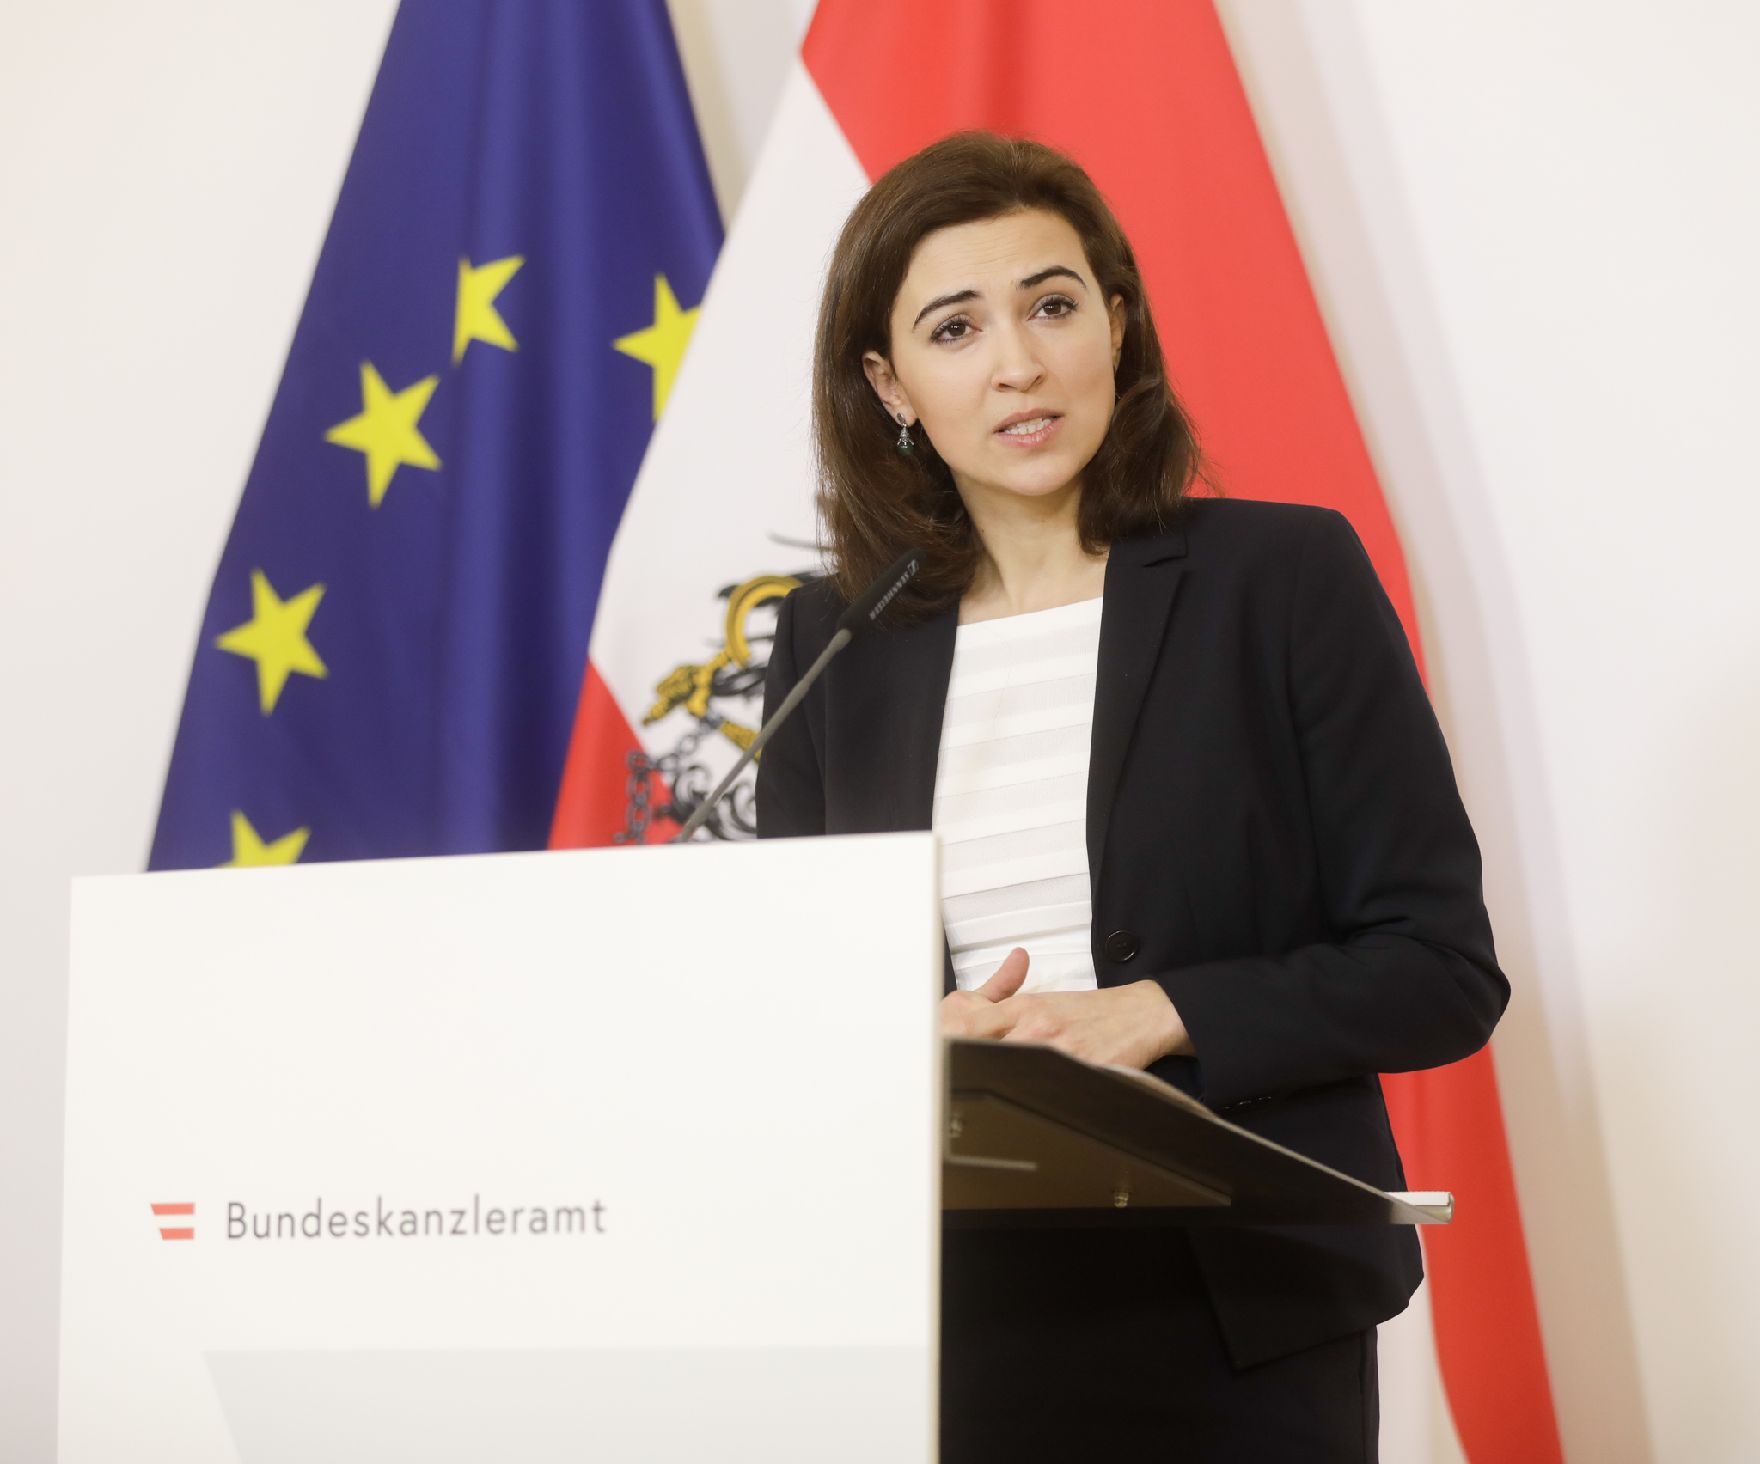 Am 19. März 2020 fand ein Pressestatement zu den Maßnahmen gegen die Krise im Bundeskanzleramt statt. Im Bild Bundesministerin Alma Zadić.